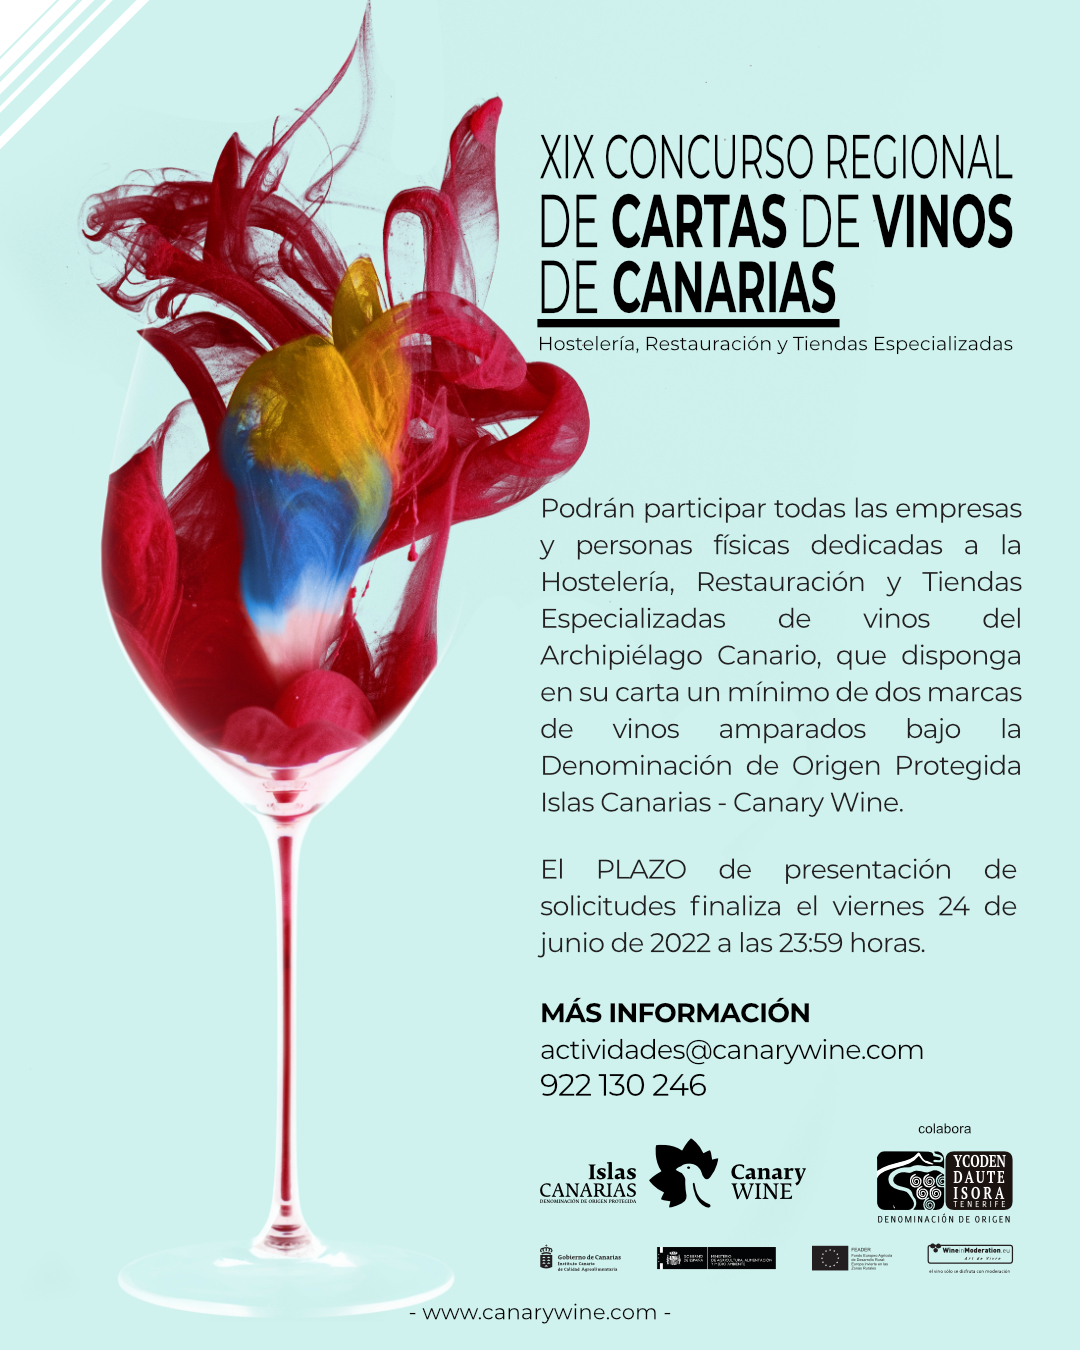 XIX Concurso Regional de “Cartas de Vinos de Canarias” para Hostelería, Restauración y Tiendas Especializadas